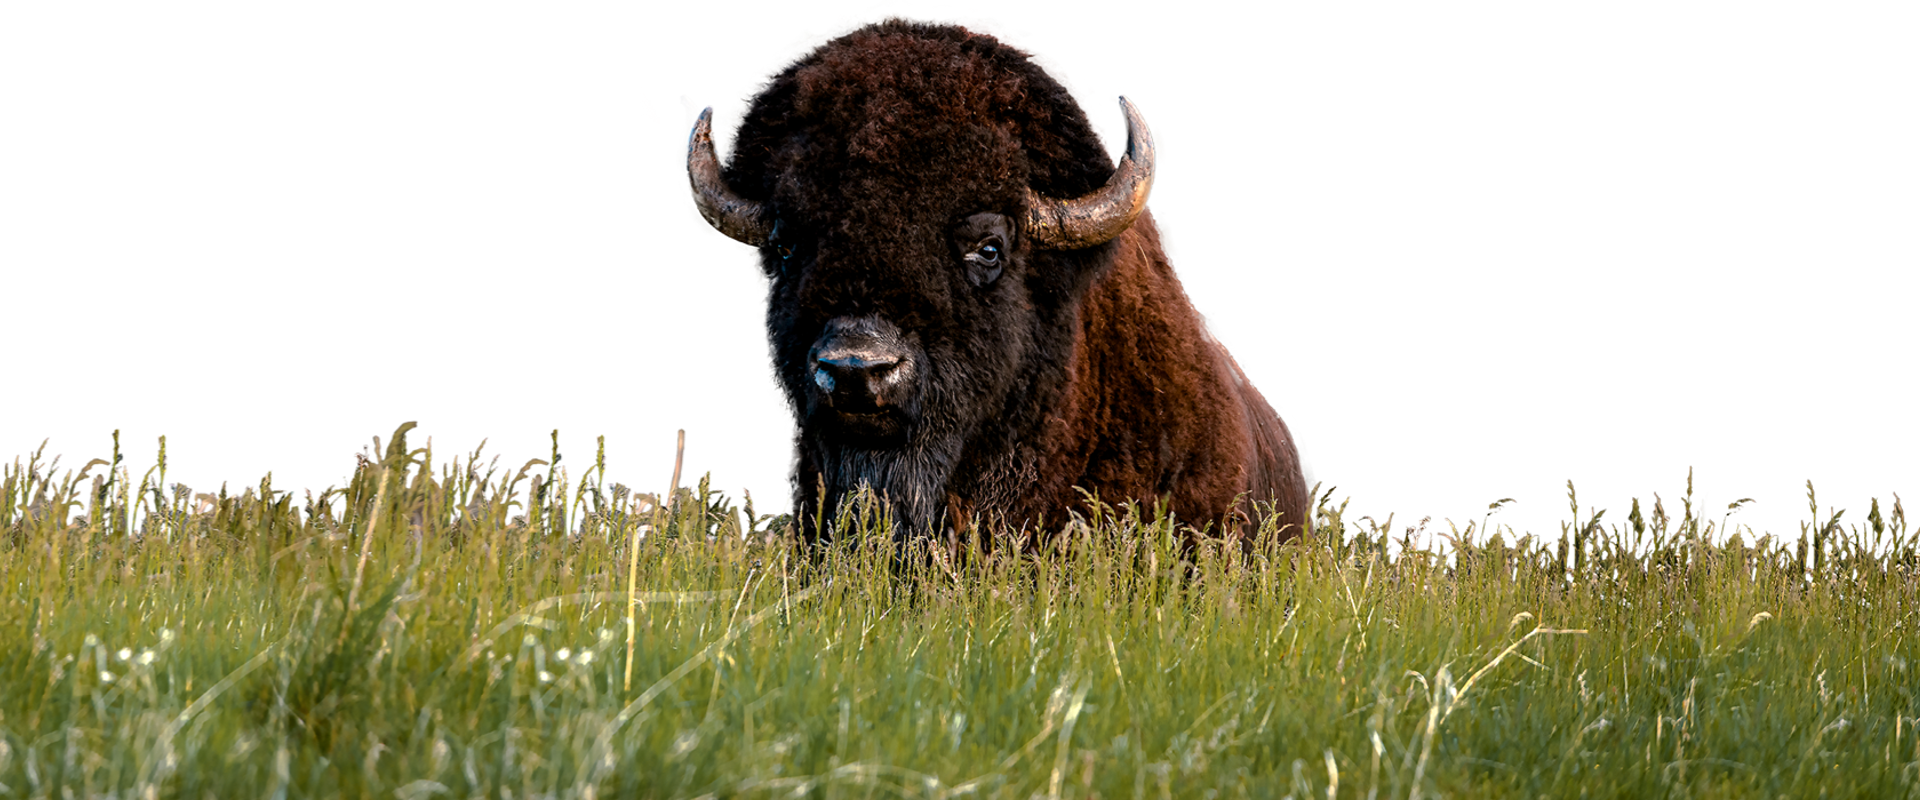 Buffalo standing in tall grass